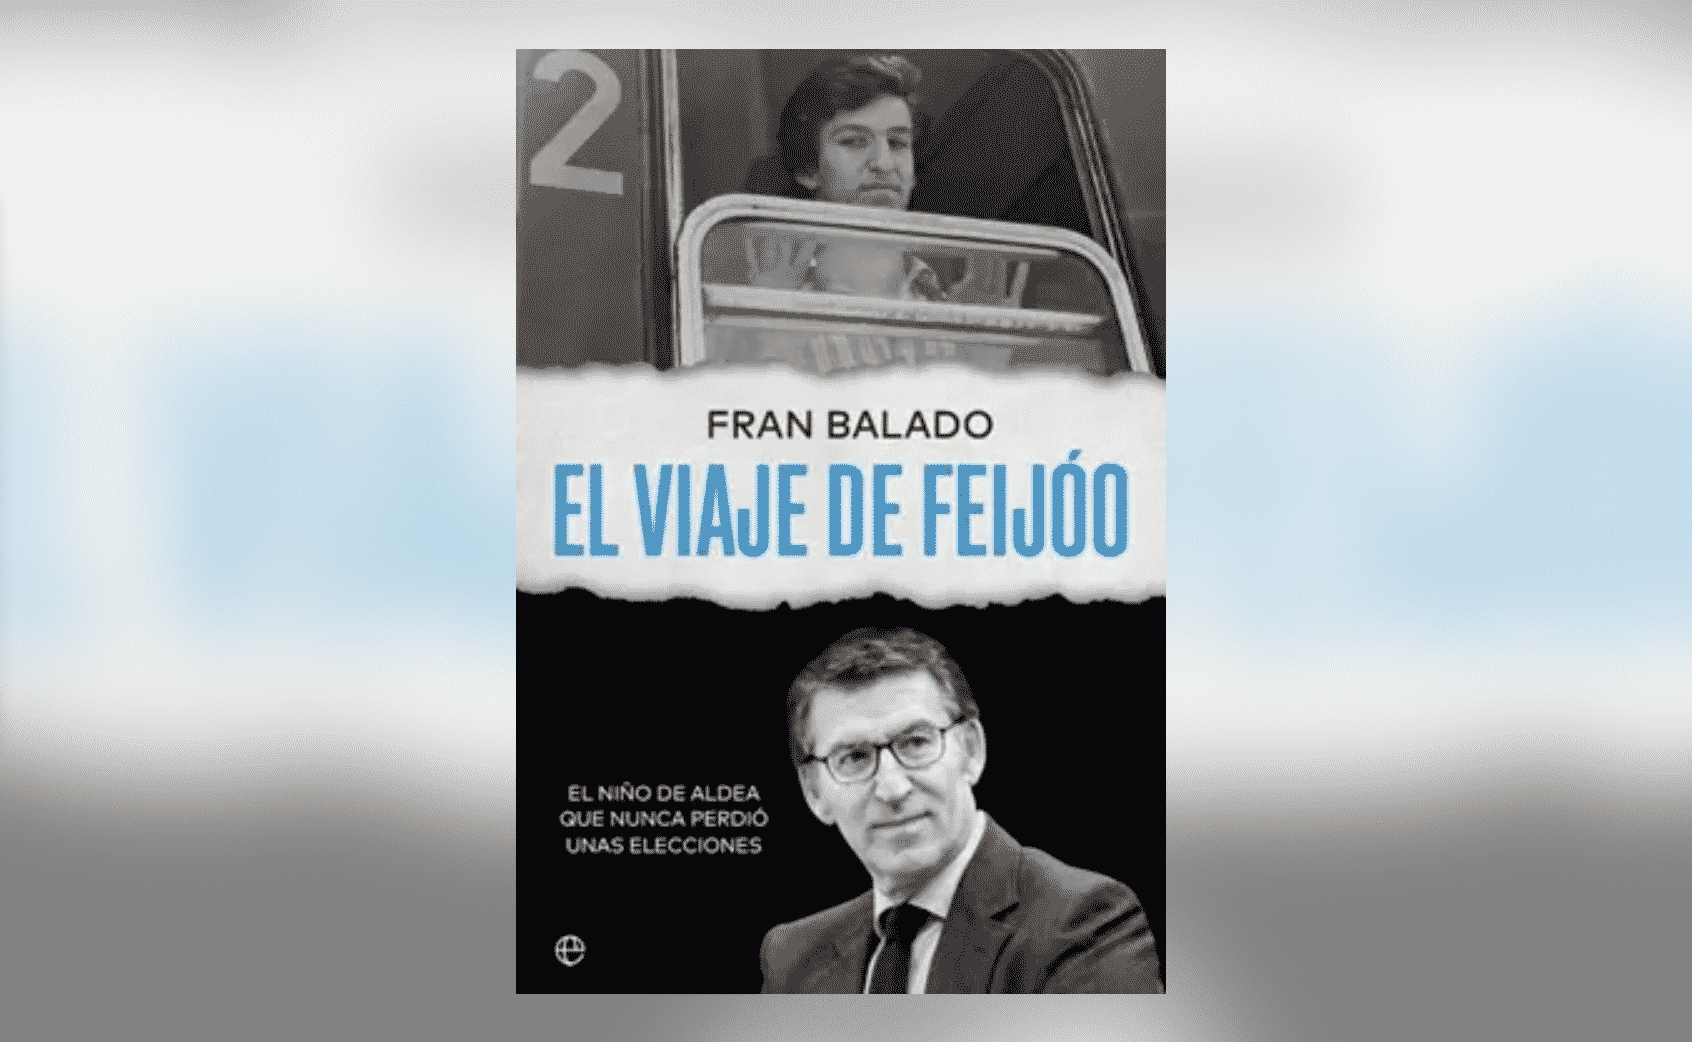 Portada del libro 'El viaje de Feijóo' de Fran Balado, periodista de 'La Voz de Galicia'